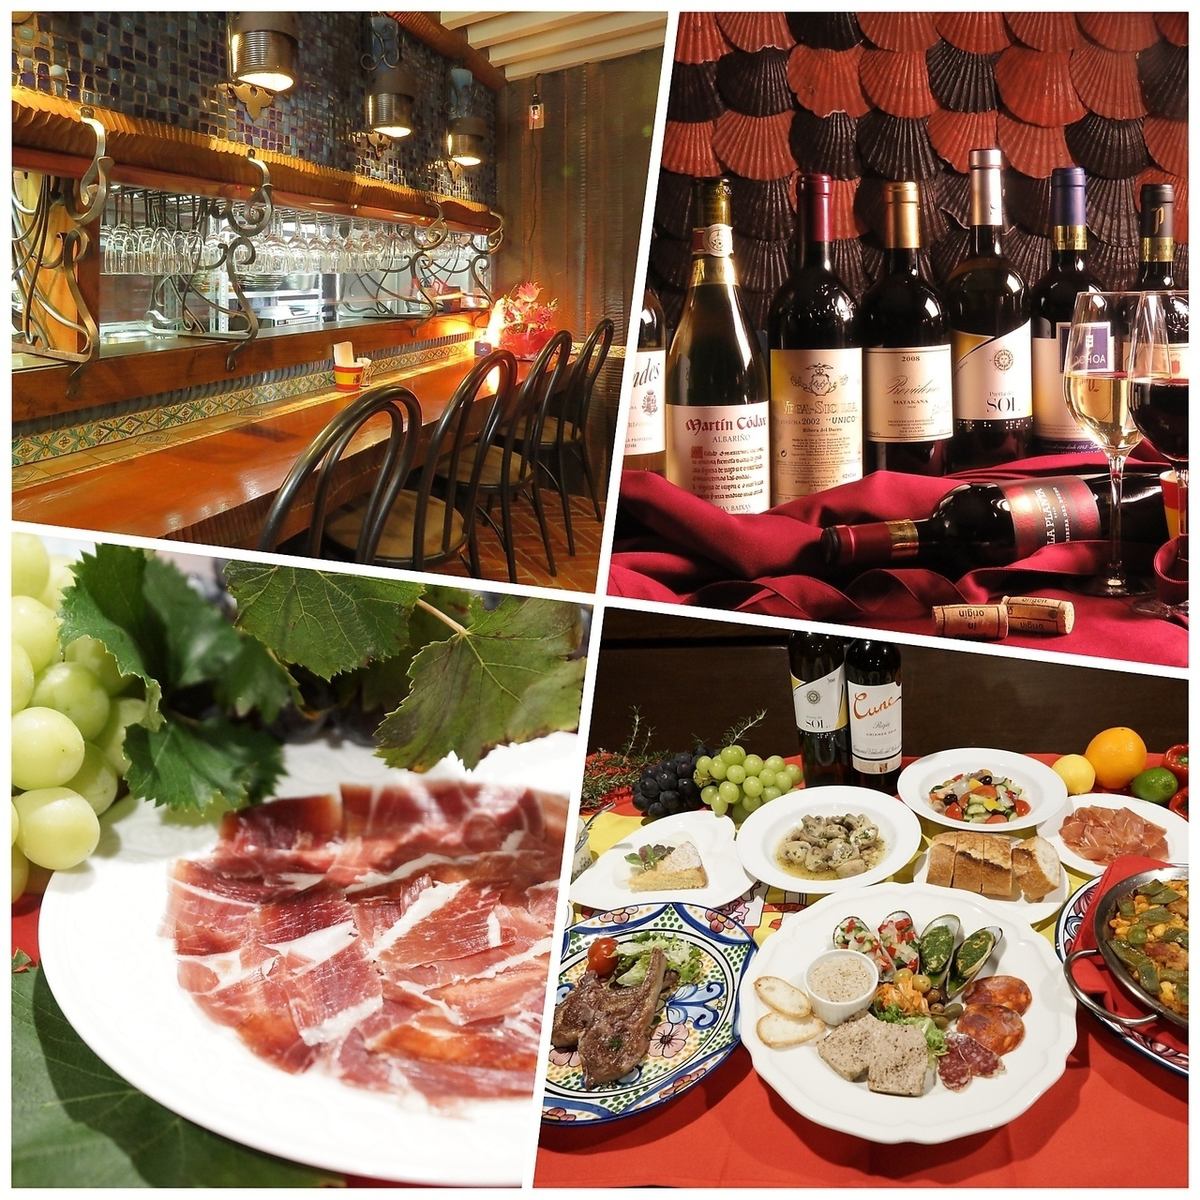 您可以在西班牙风格的餐厅享用精致的西班牙美食和美酒的餐厅。